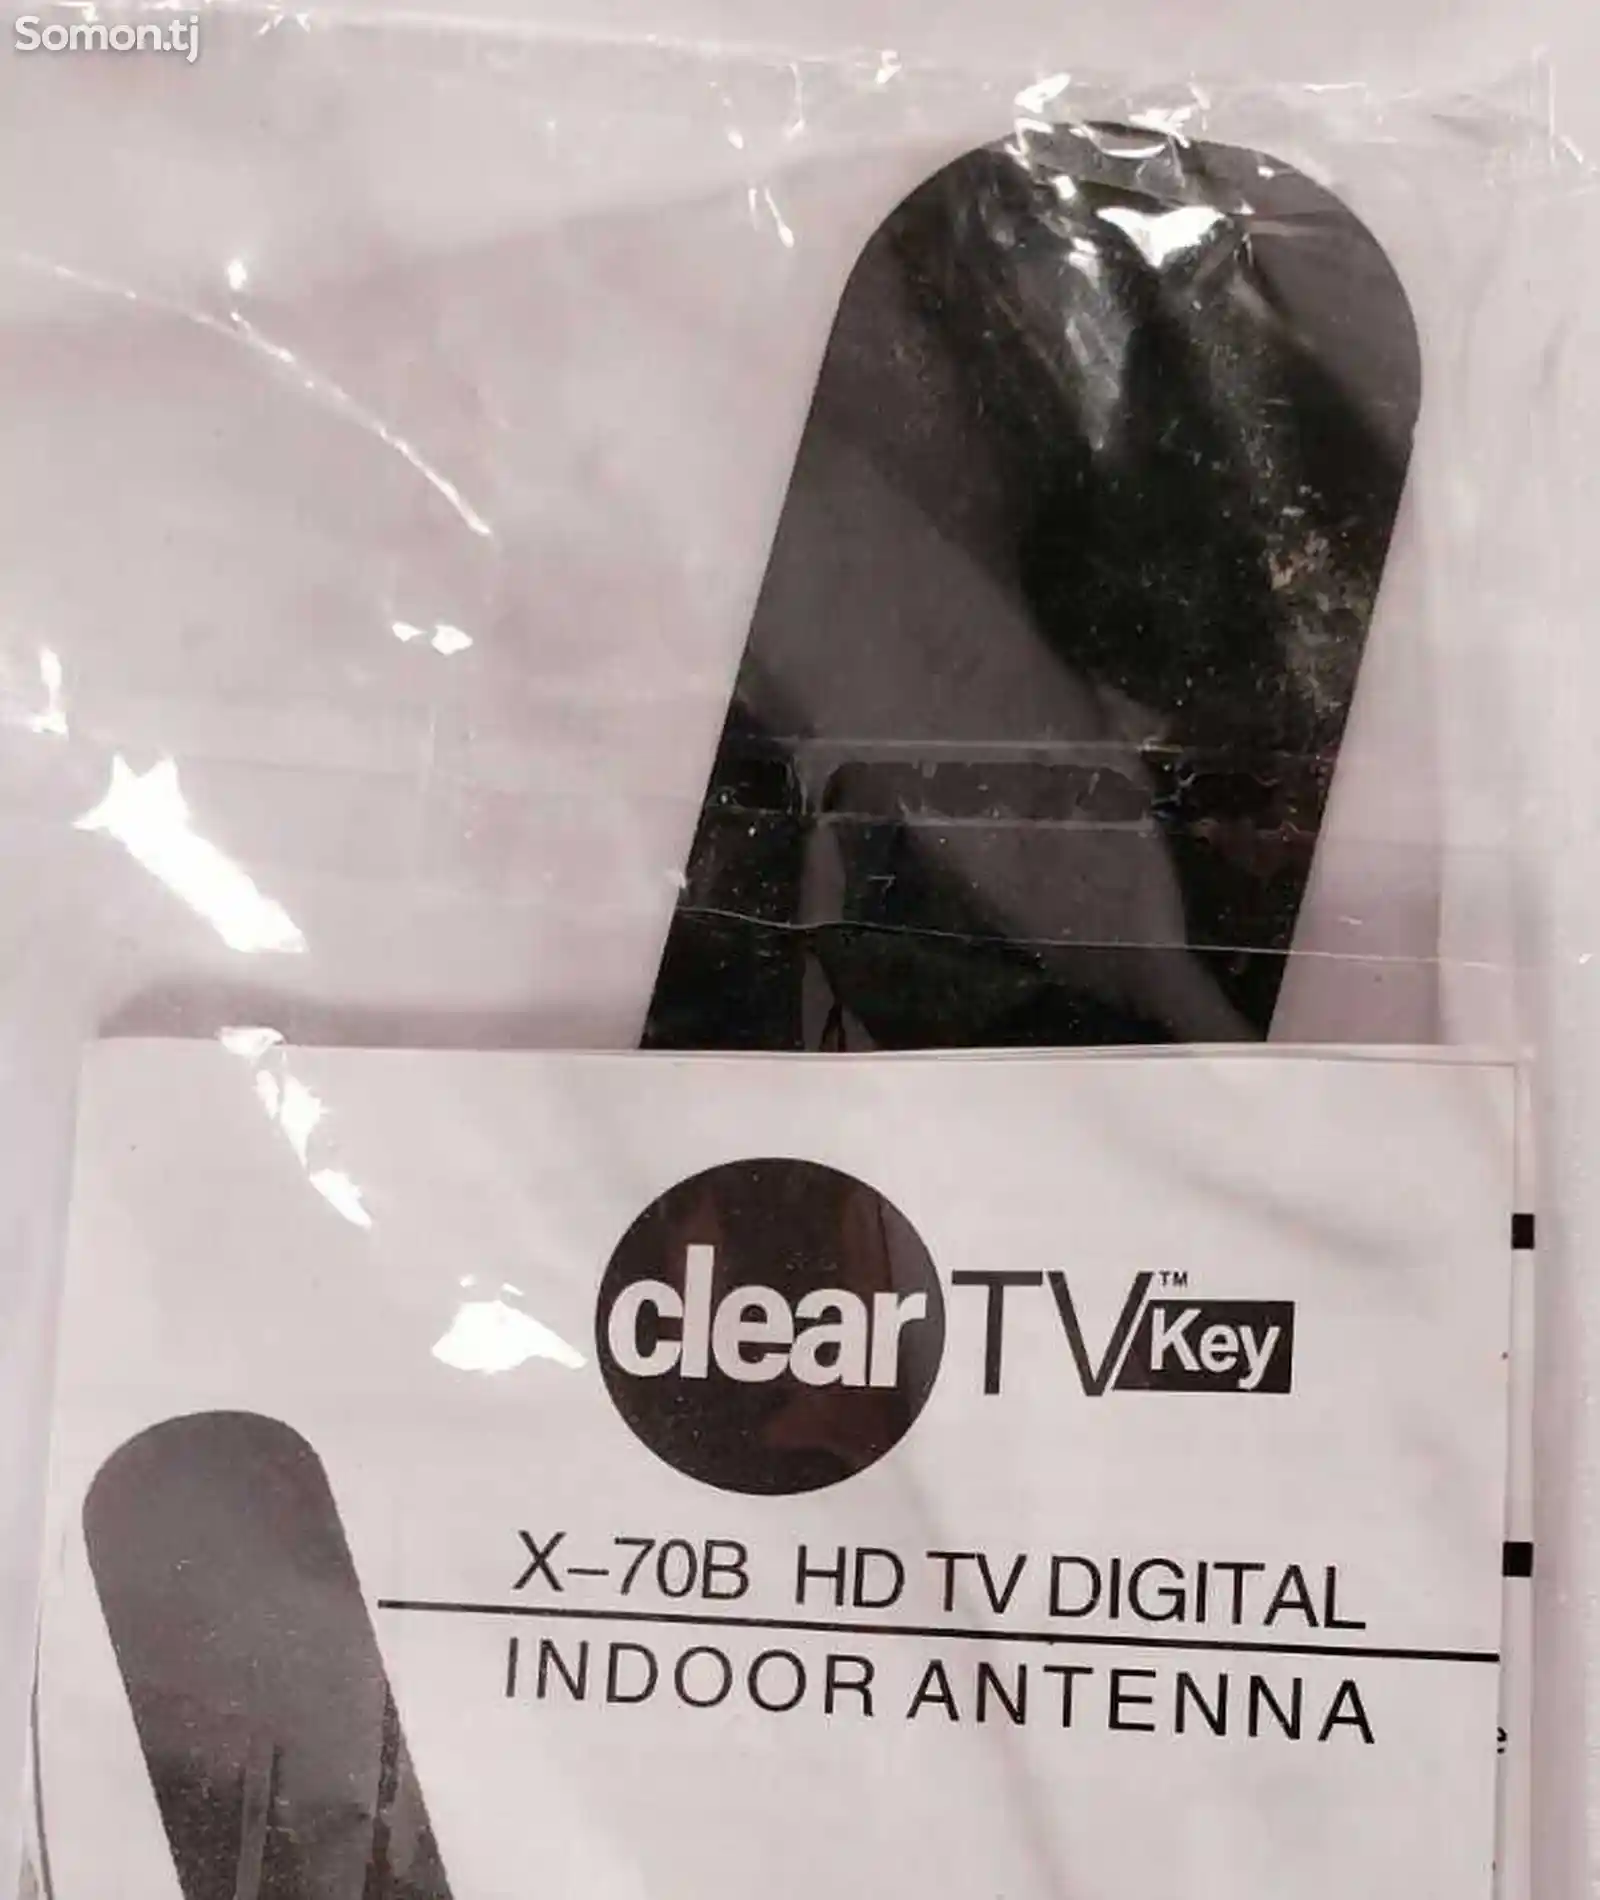 Цифровая комнатная антенна ClearTVkey X-70B HD TV-10